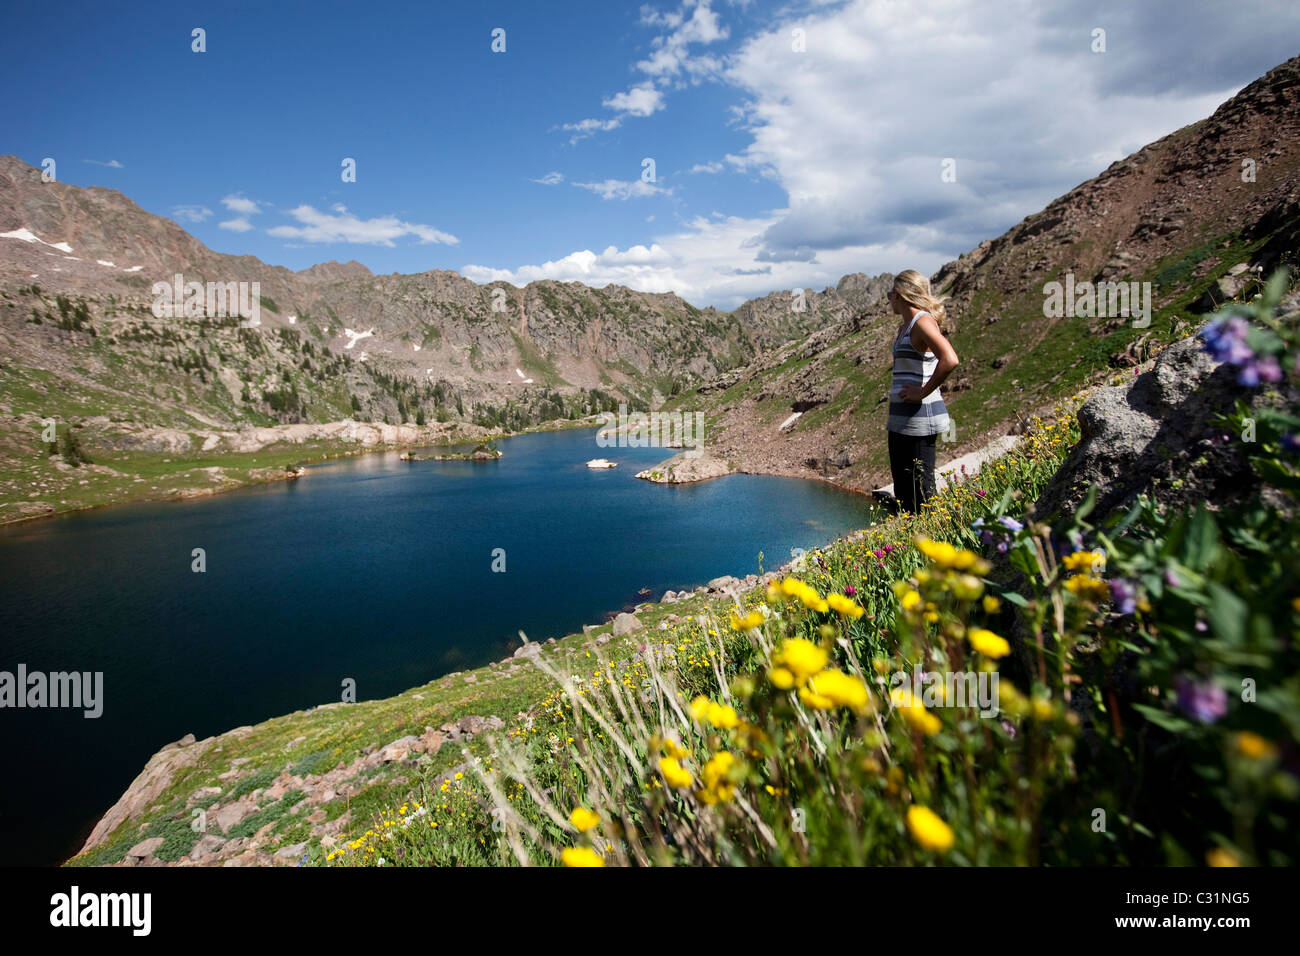 Eine junge Frau steht auf einem Berghang mit Blick auf einen Bergsee in Colorado Wildblumen bedeckt. Stockfoto